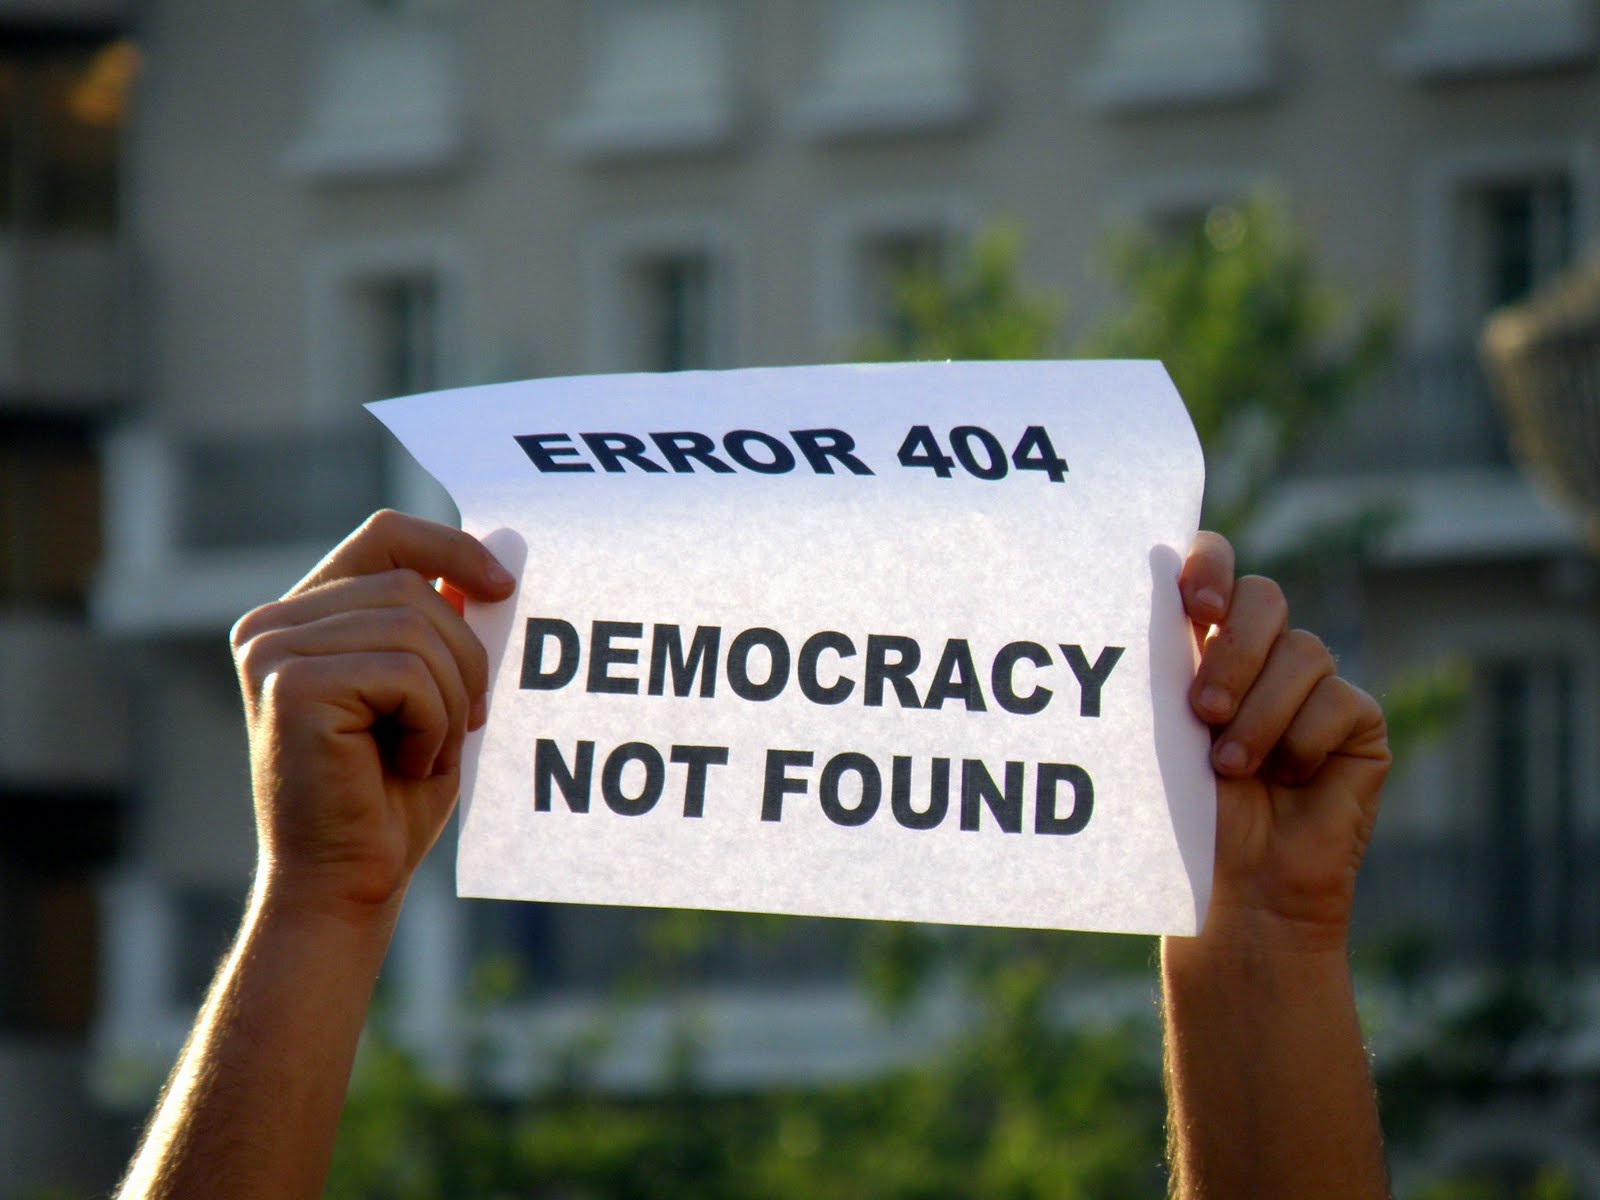 Δυστυχώς υπάρχει “έλλειμμα δημοκρατίας” στα Χανιά